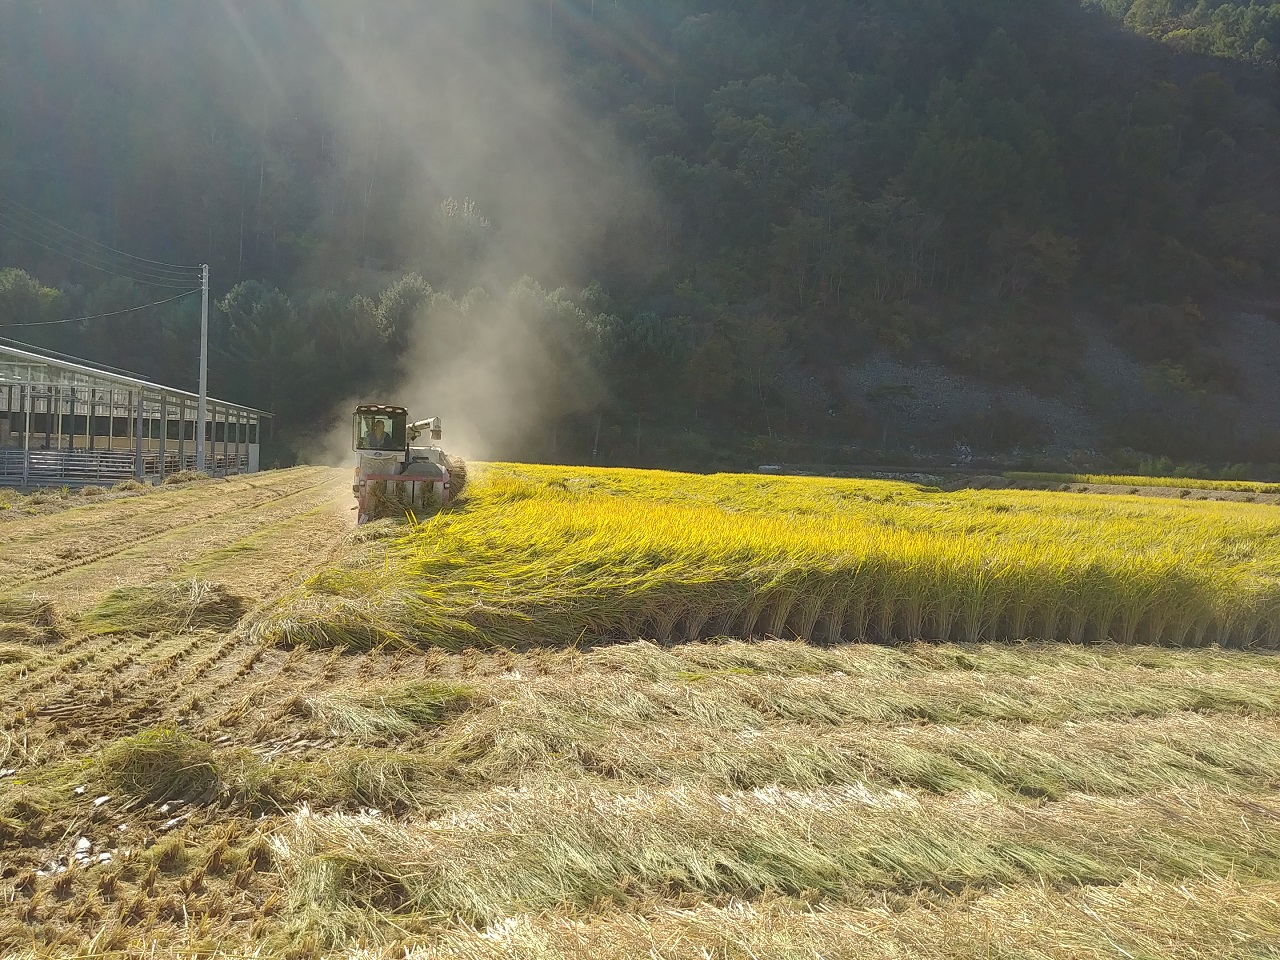 만생종인 삼광벼를 수확하는 모습이다.